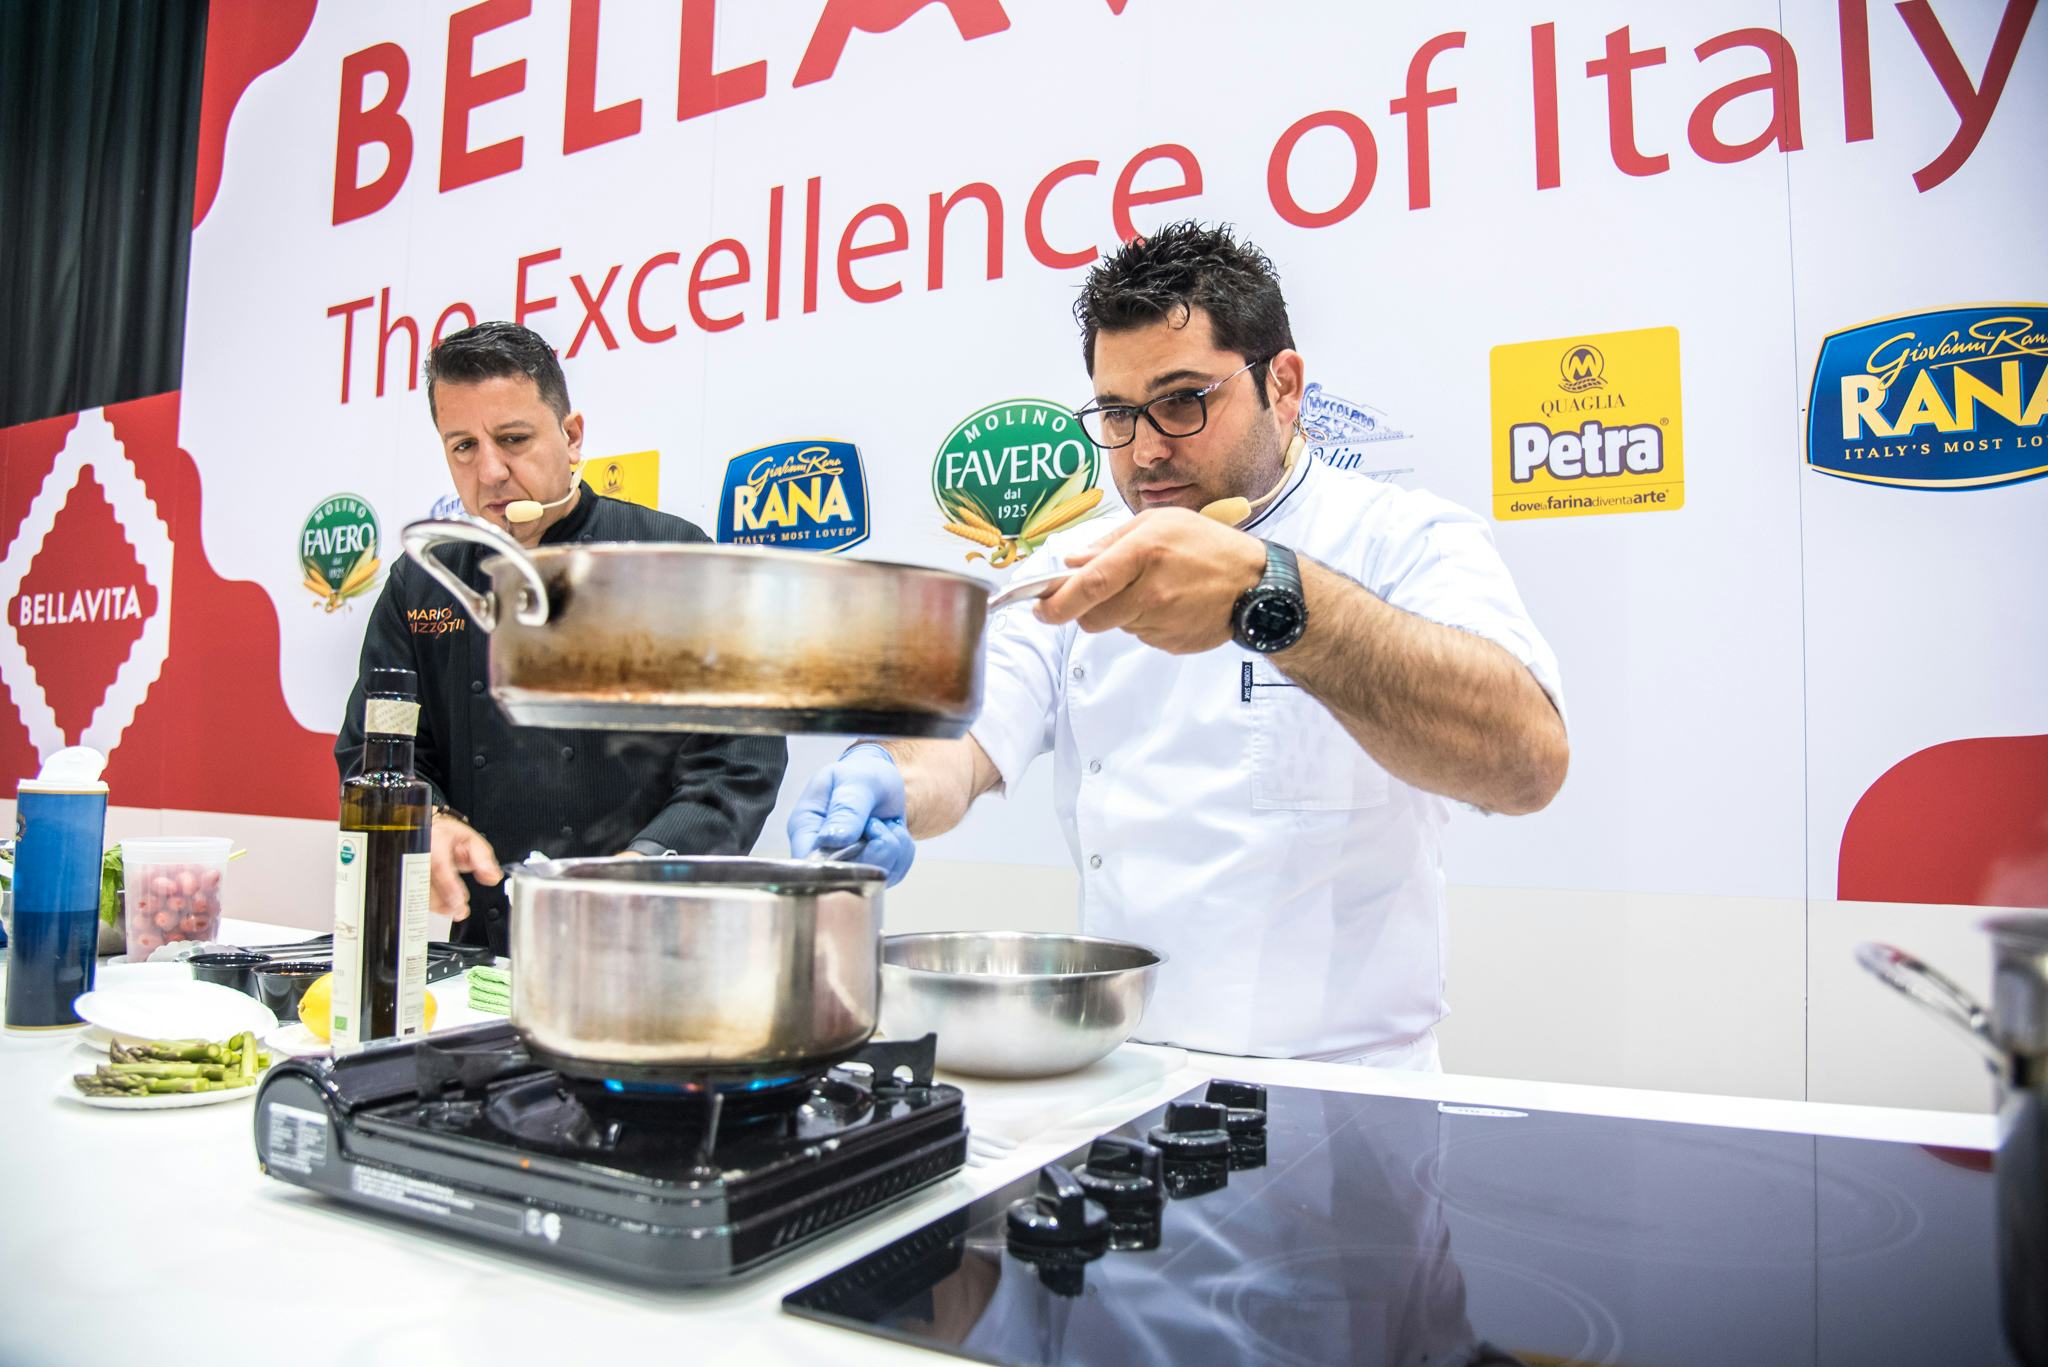 Chef-koks en sommeliers laten het beste van Italië zien op Bellavita